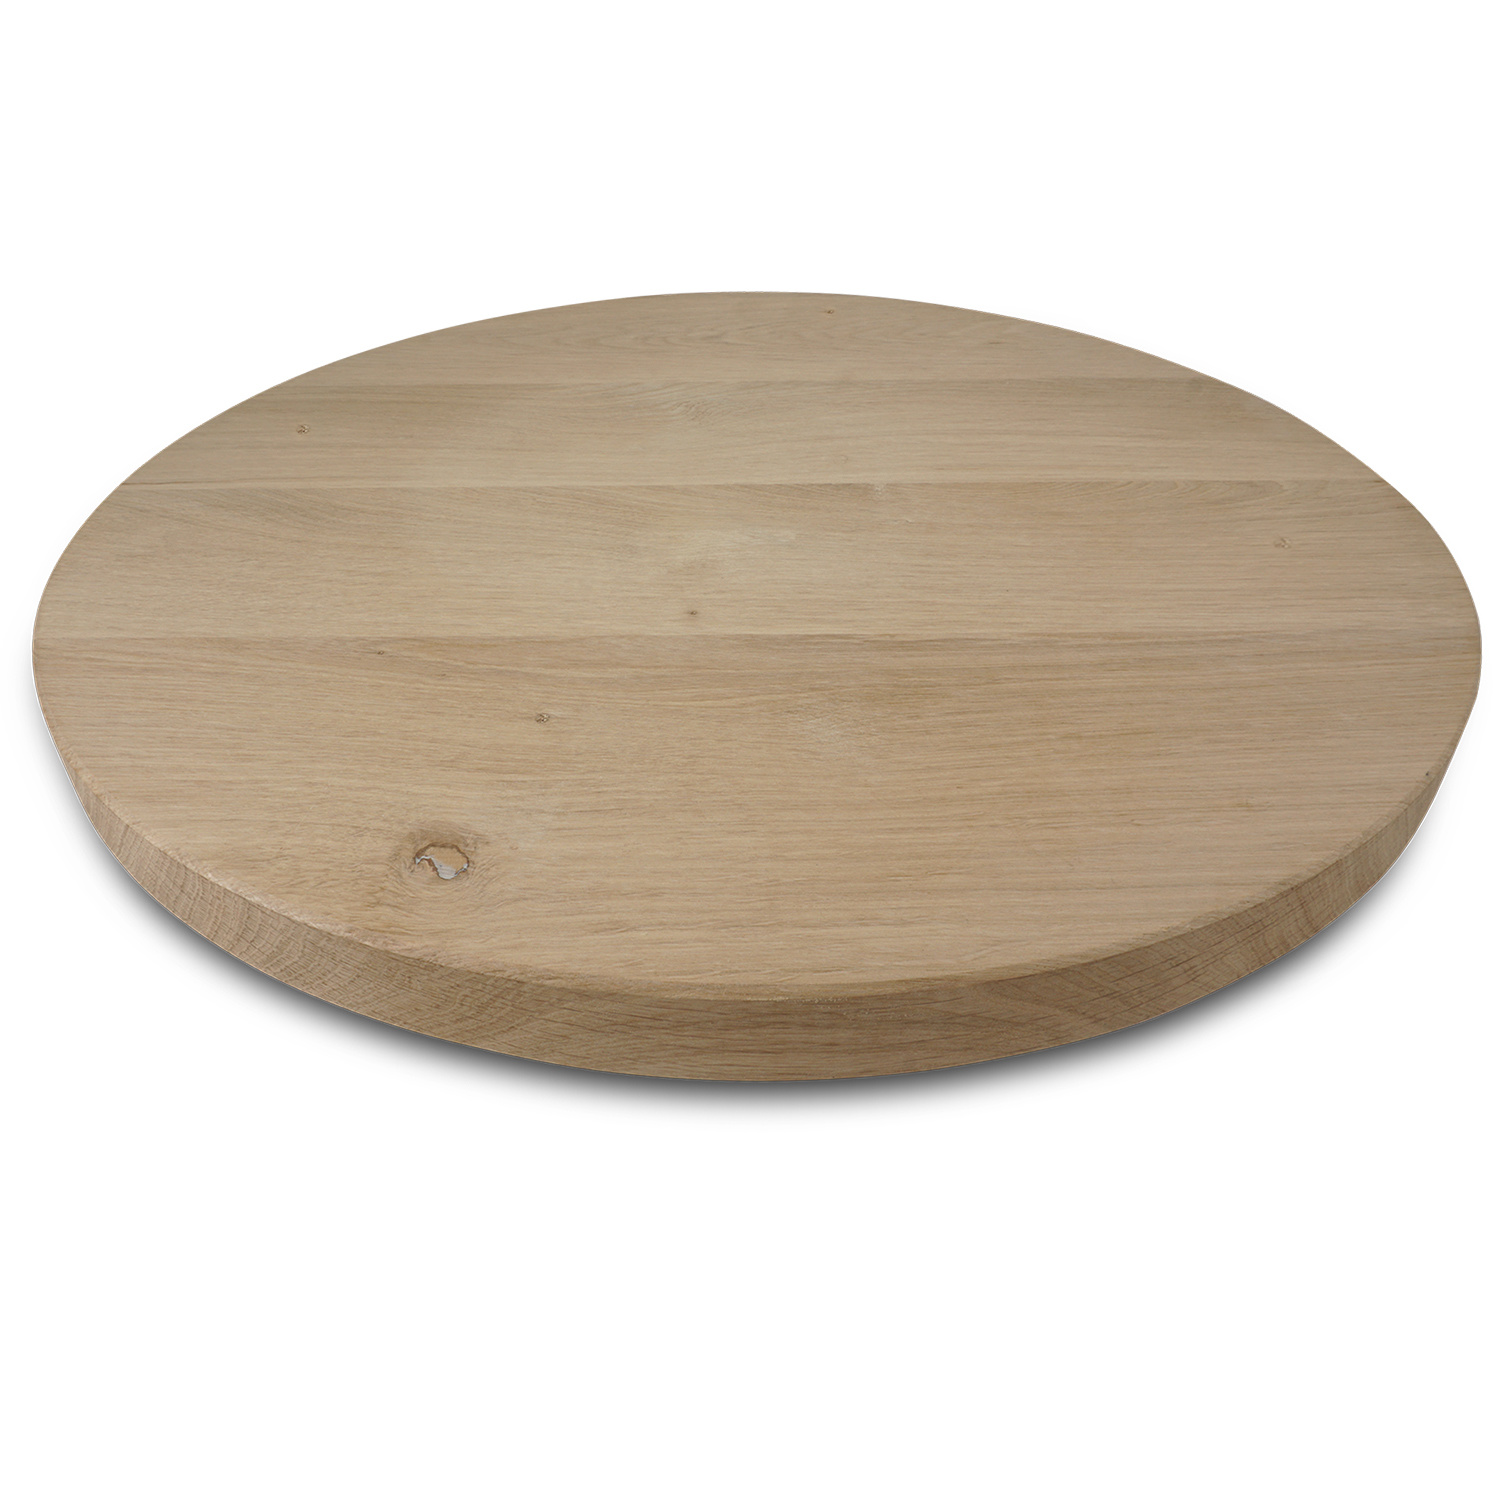  Tischplatte Eiche rund nach Maß - 4 cm dick - Eichenholz rustikal - Durchmesser: 30 - 180 cm - Eiche Tischplatte rund massiv - verleimt & künstlich getrocknet (HF 8-12%)